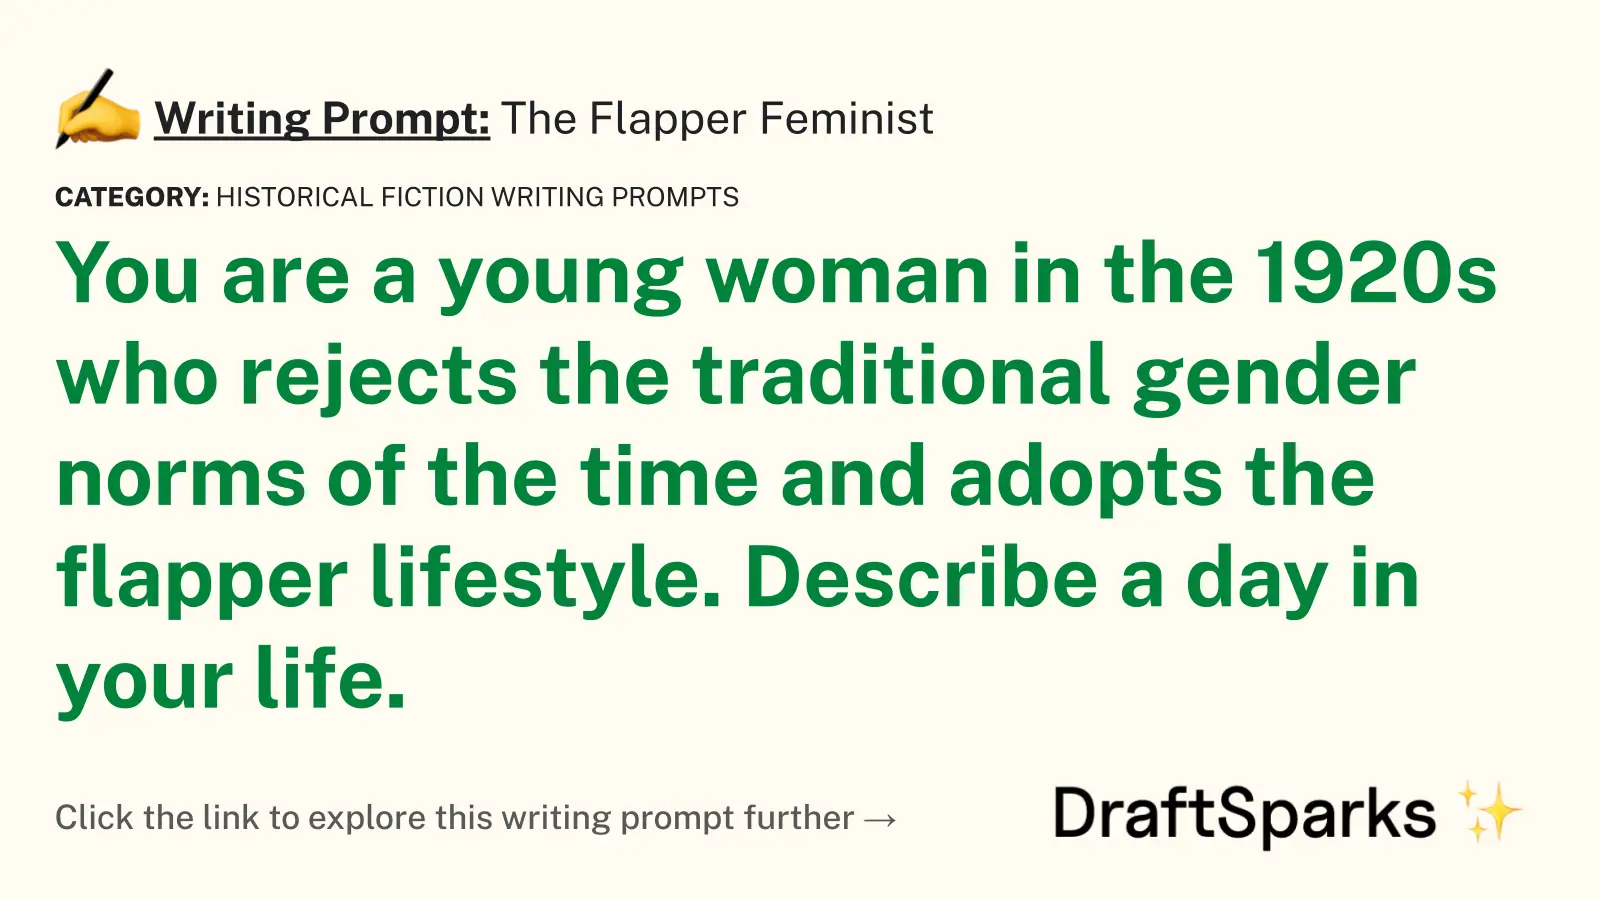 The Flapper Feminist